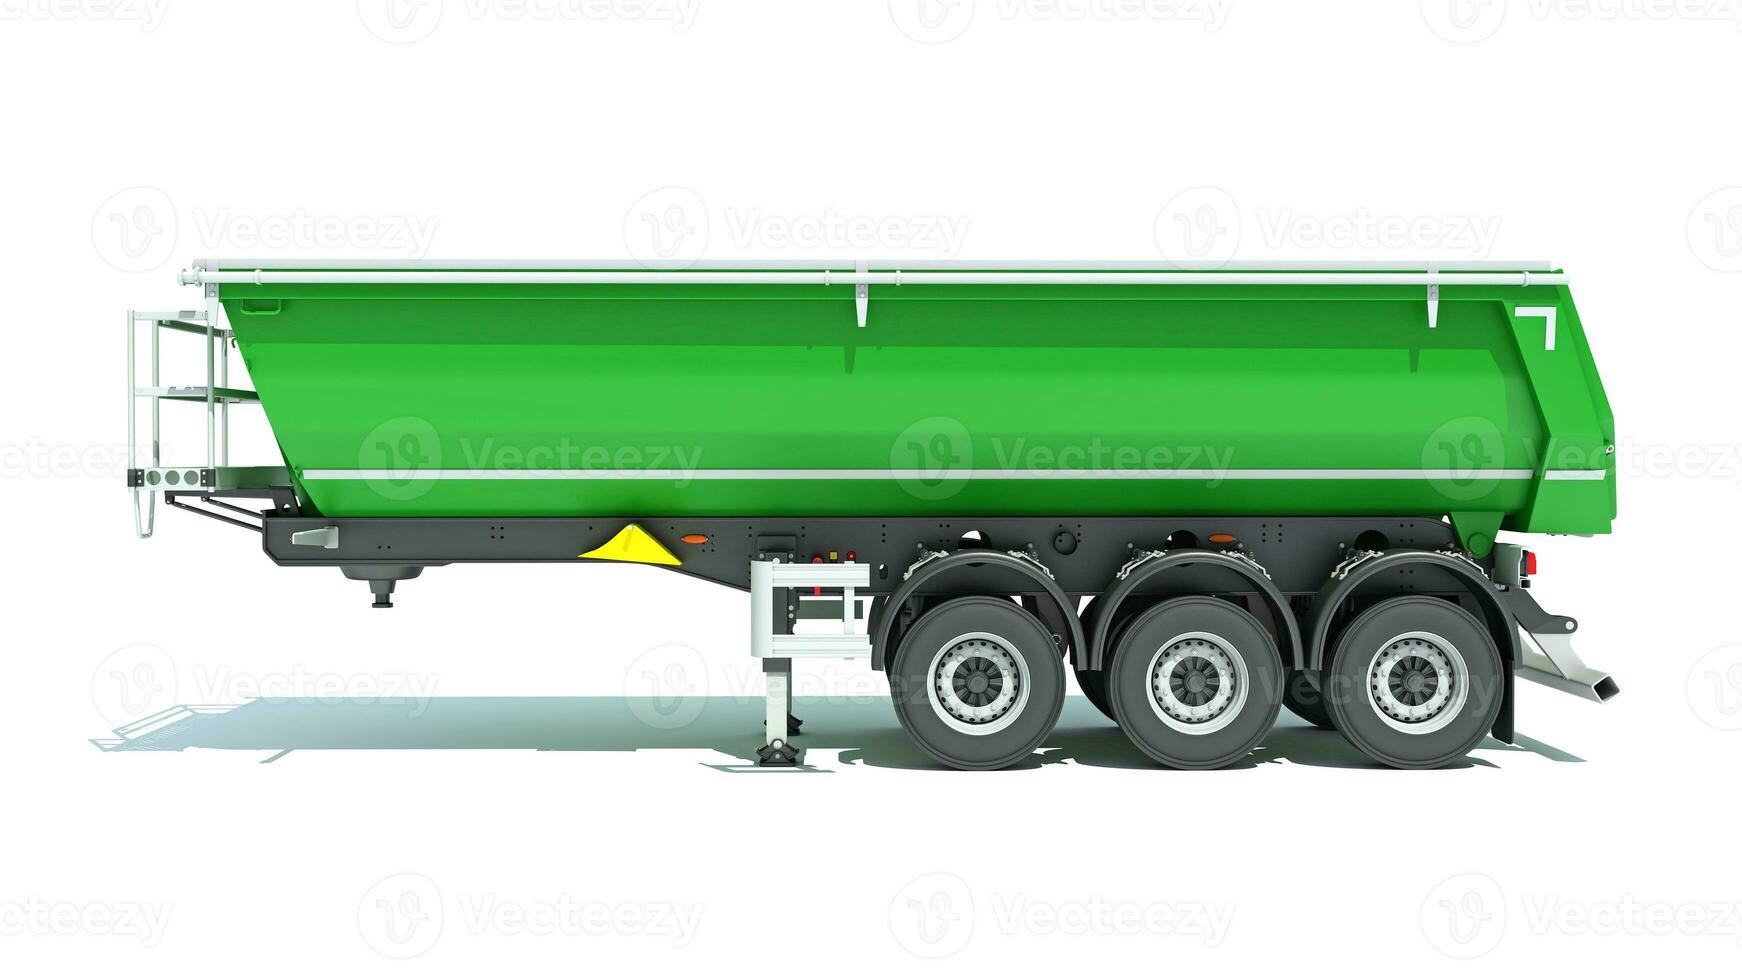 brytning dumpa trailer tung konstruktion maskineri 3d tolkning på vit bakgrund foto